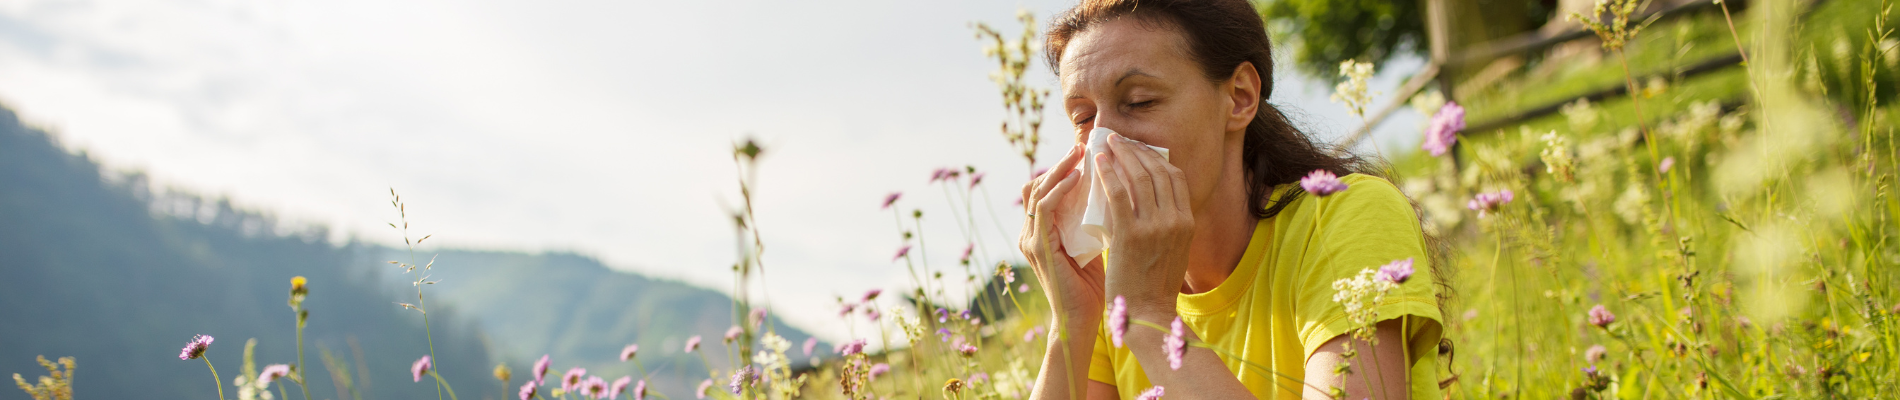 Pollenbelastung: Wie entsteht eine Pollenallergie und was kann ich dagegen tun?